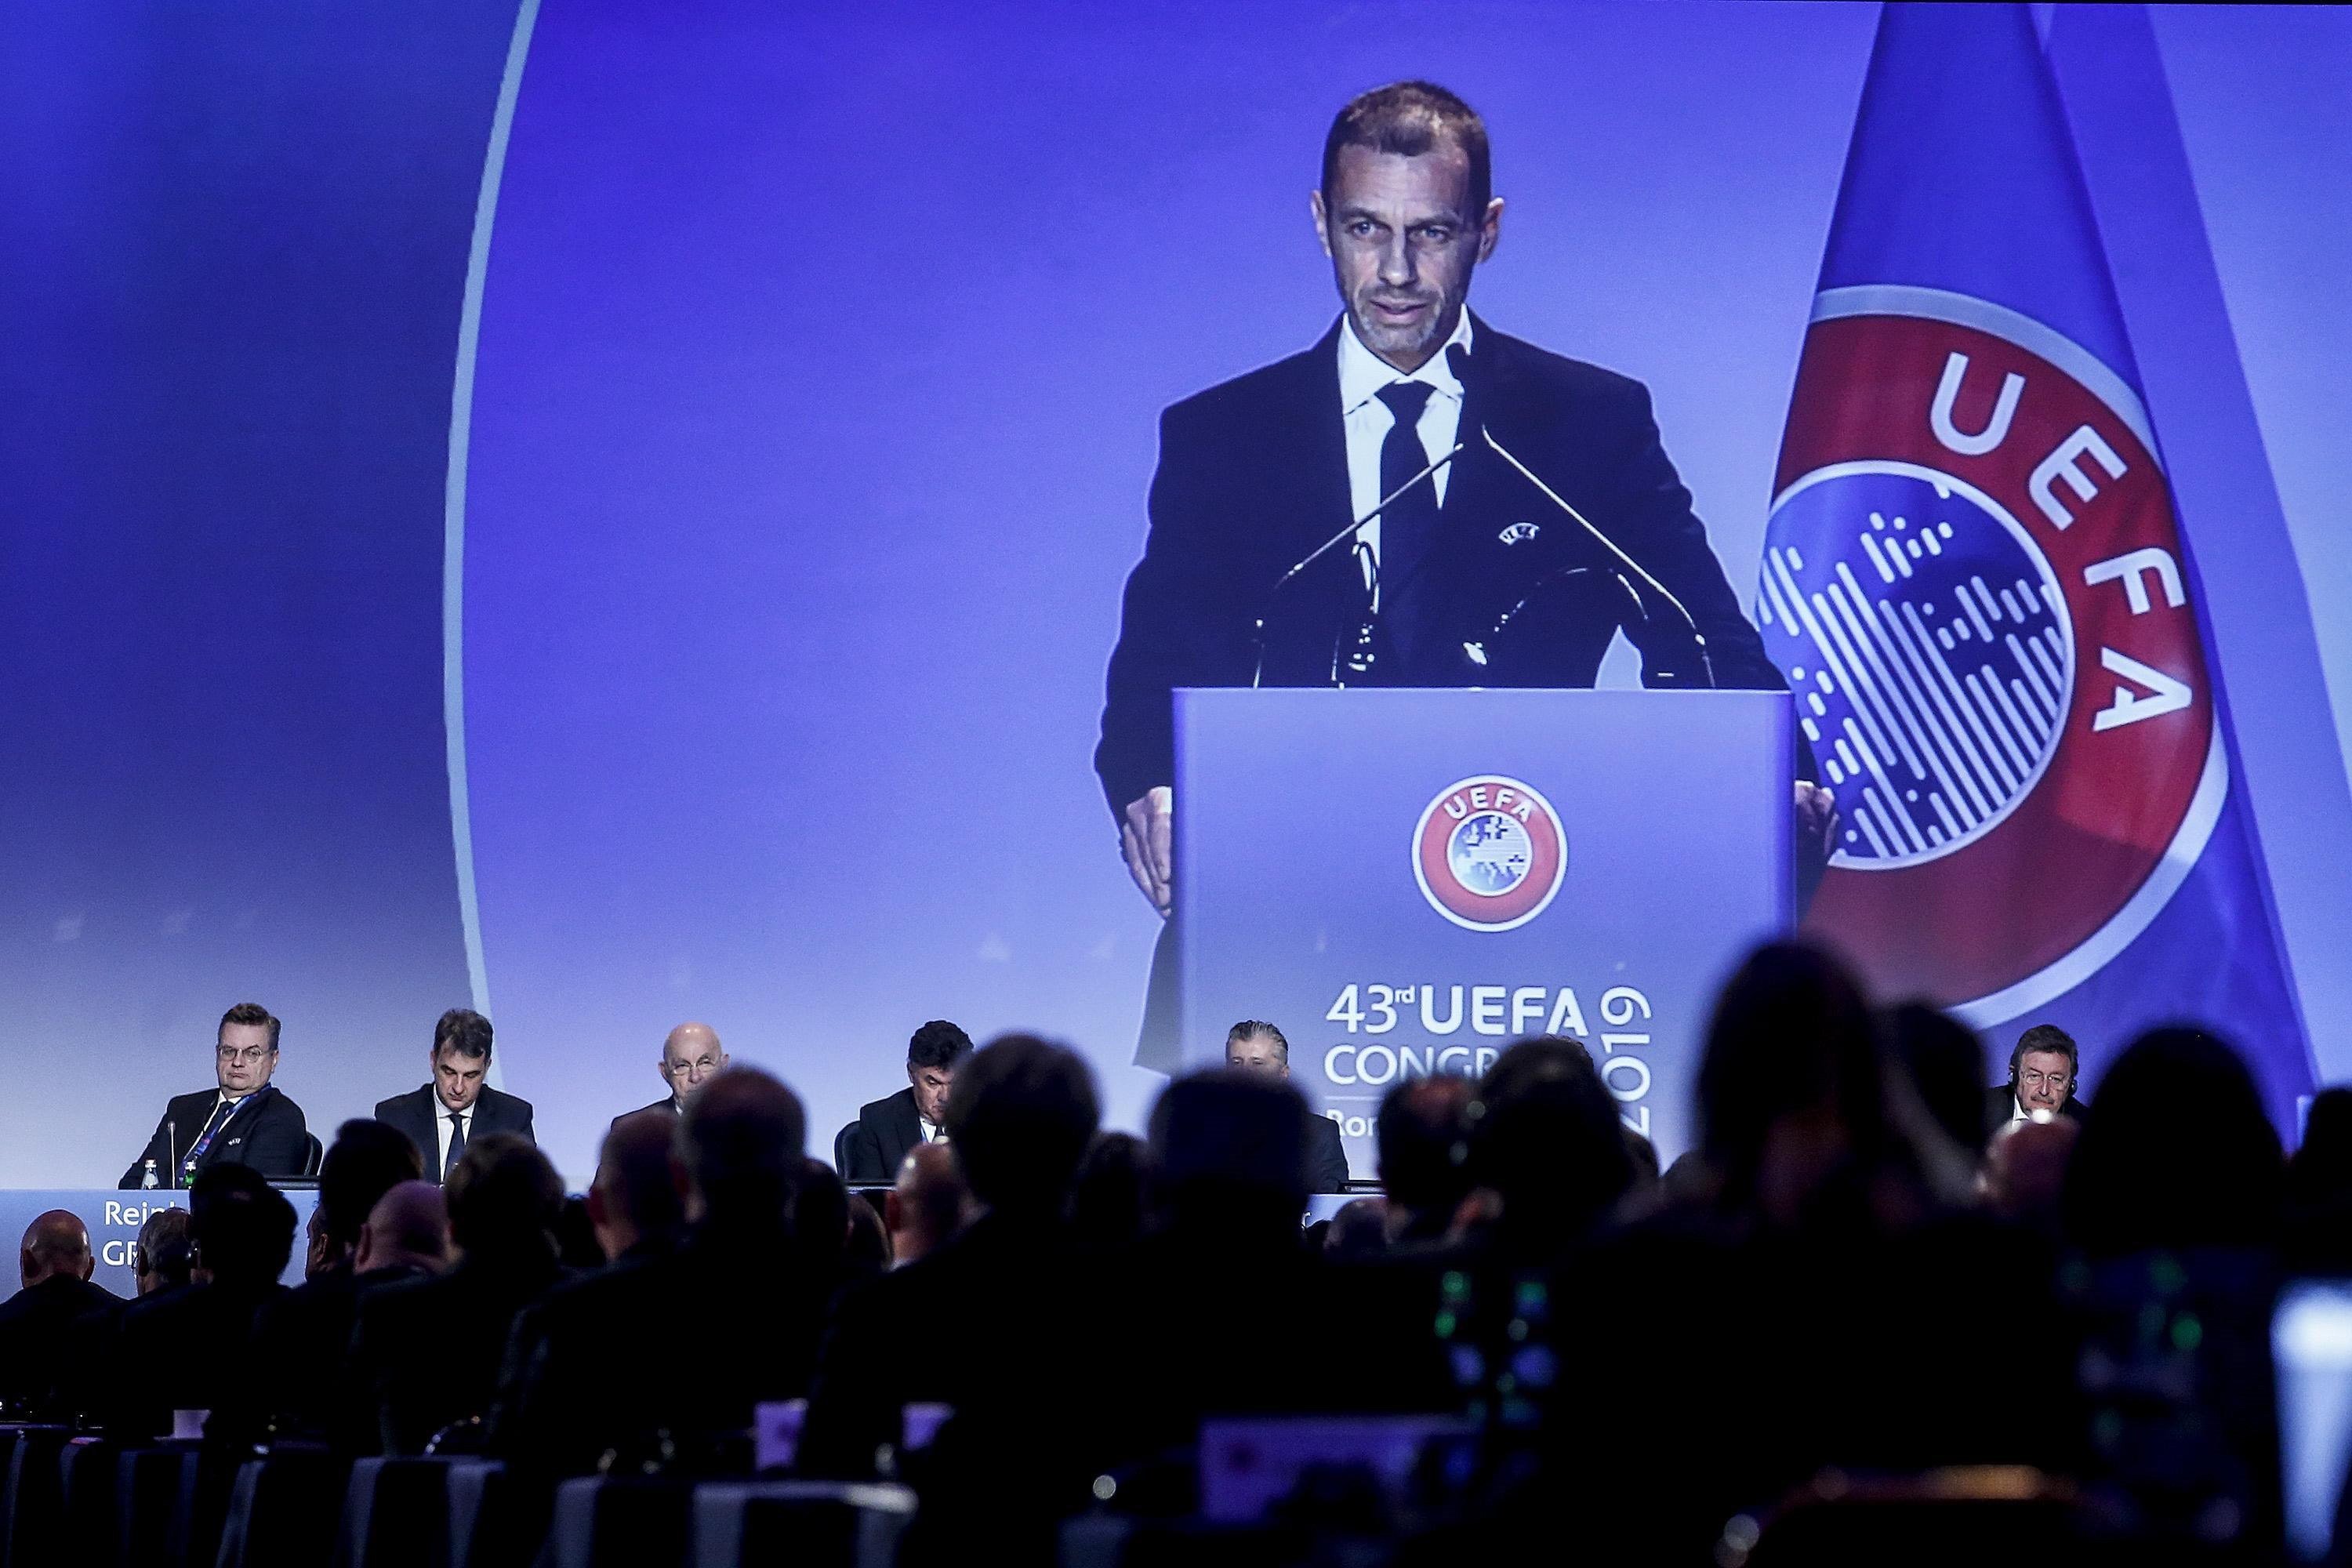 La UEFA es posa seriosa: qui suspengui la lliga no jugarà competicions europees